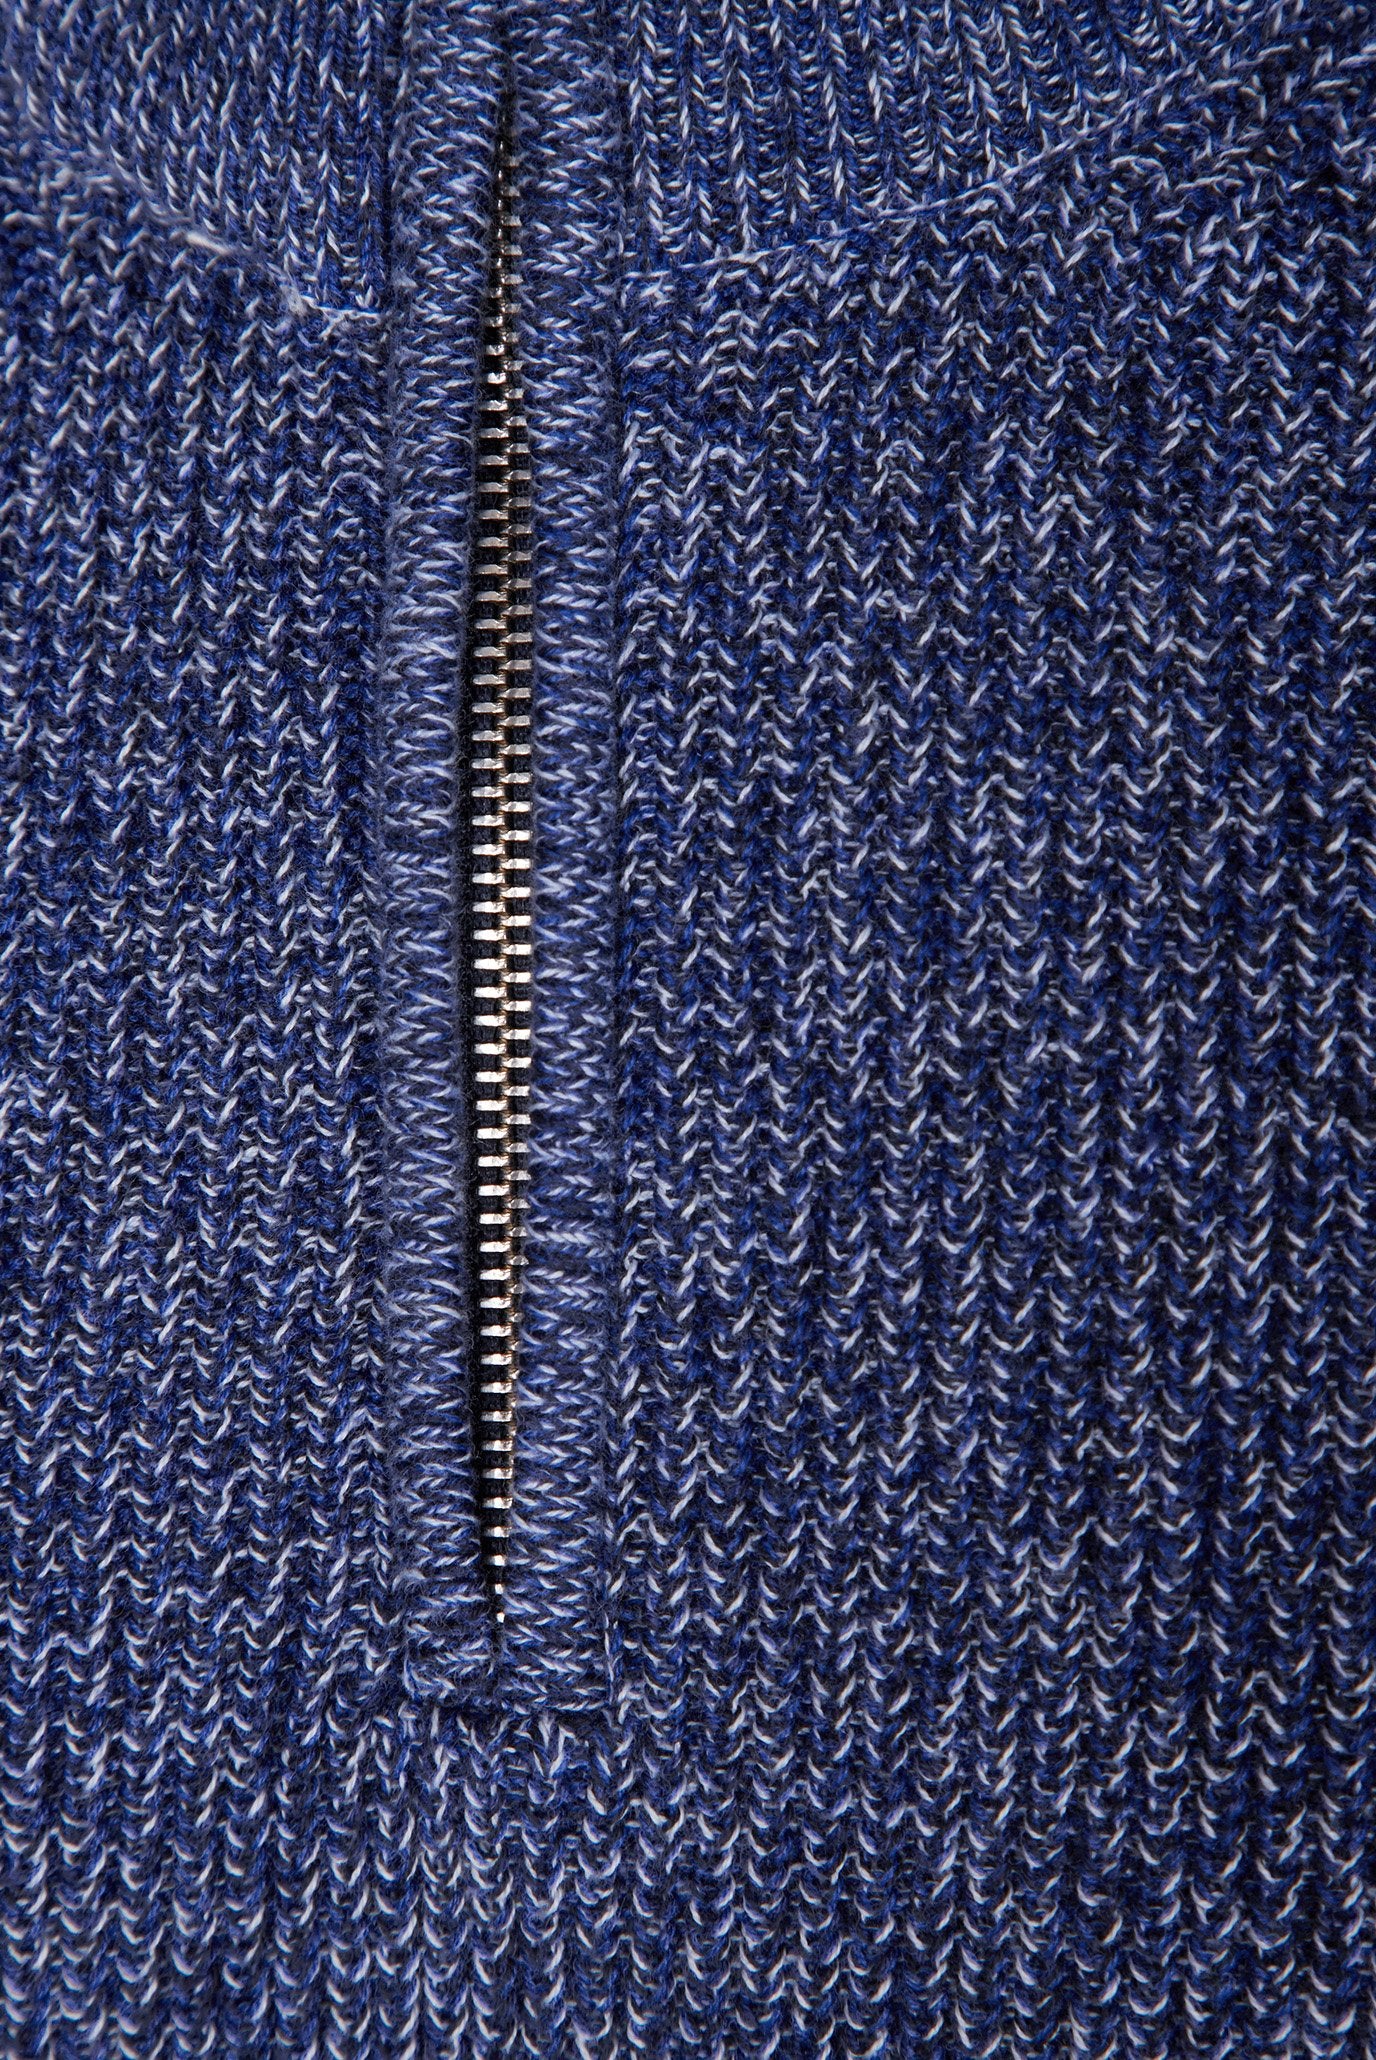 GANT - Twisted Yarn Half Zip Jumper in Marled Blue 8030177 433